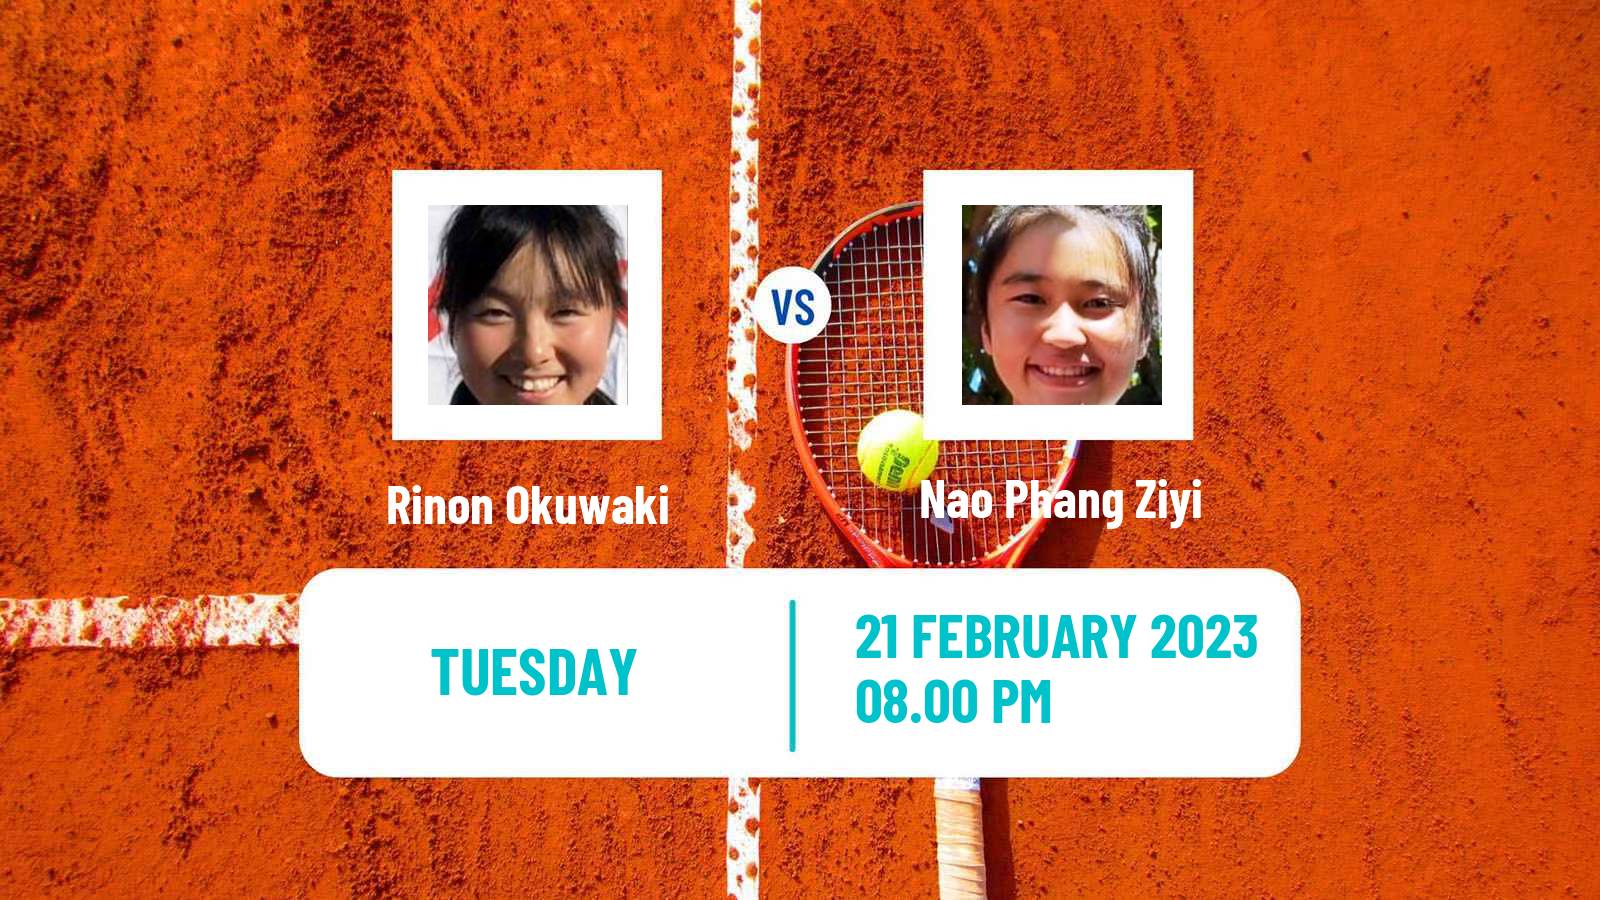 Tennis ITF Tournaments Rinon Okuwaki - Nao Phang Ziyi